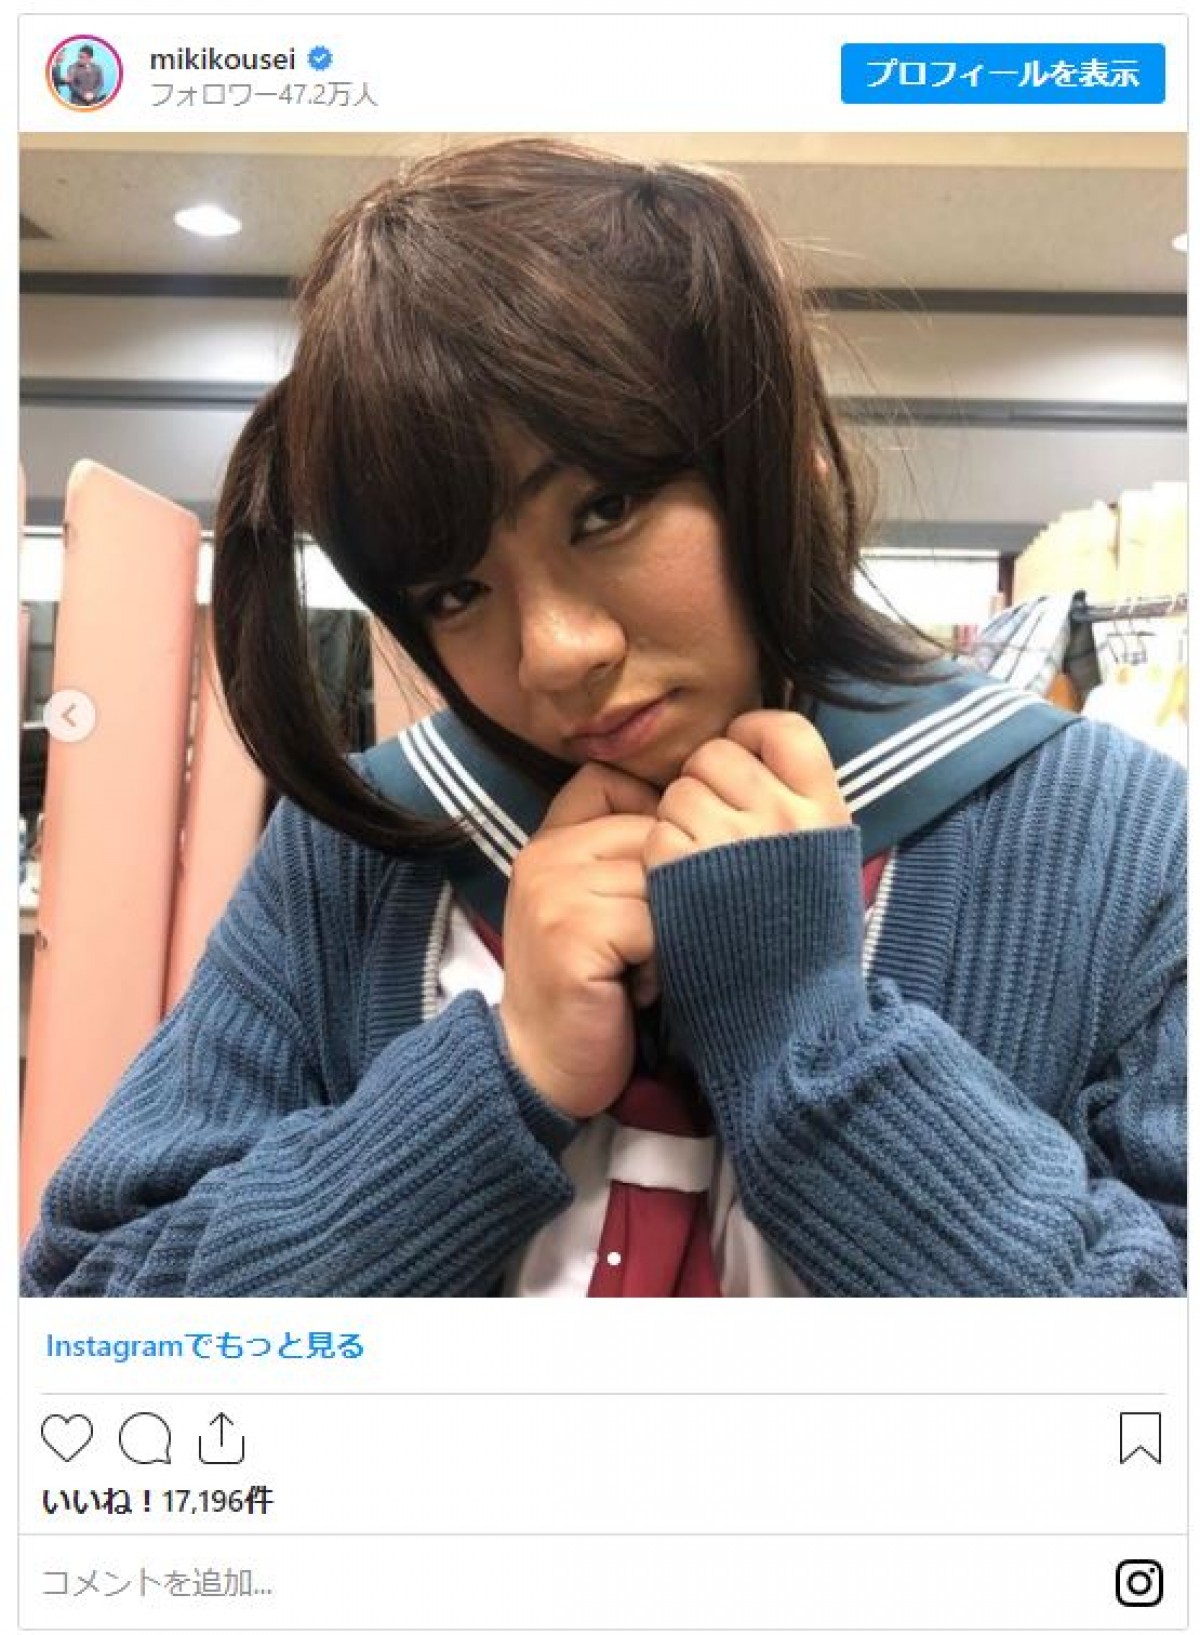 ミキ・亜生、“女子高生”に変身 「ダントツめっちゃ可愛かった」の声